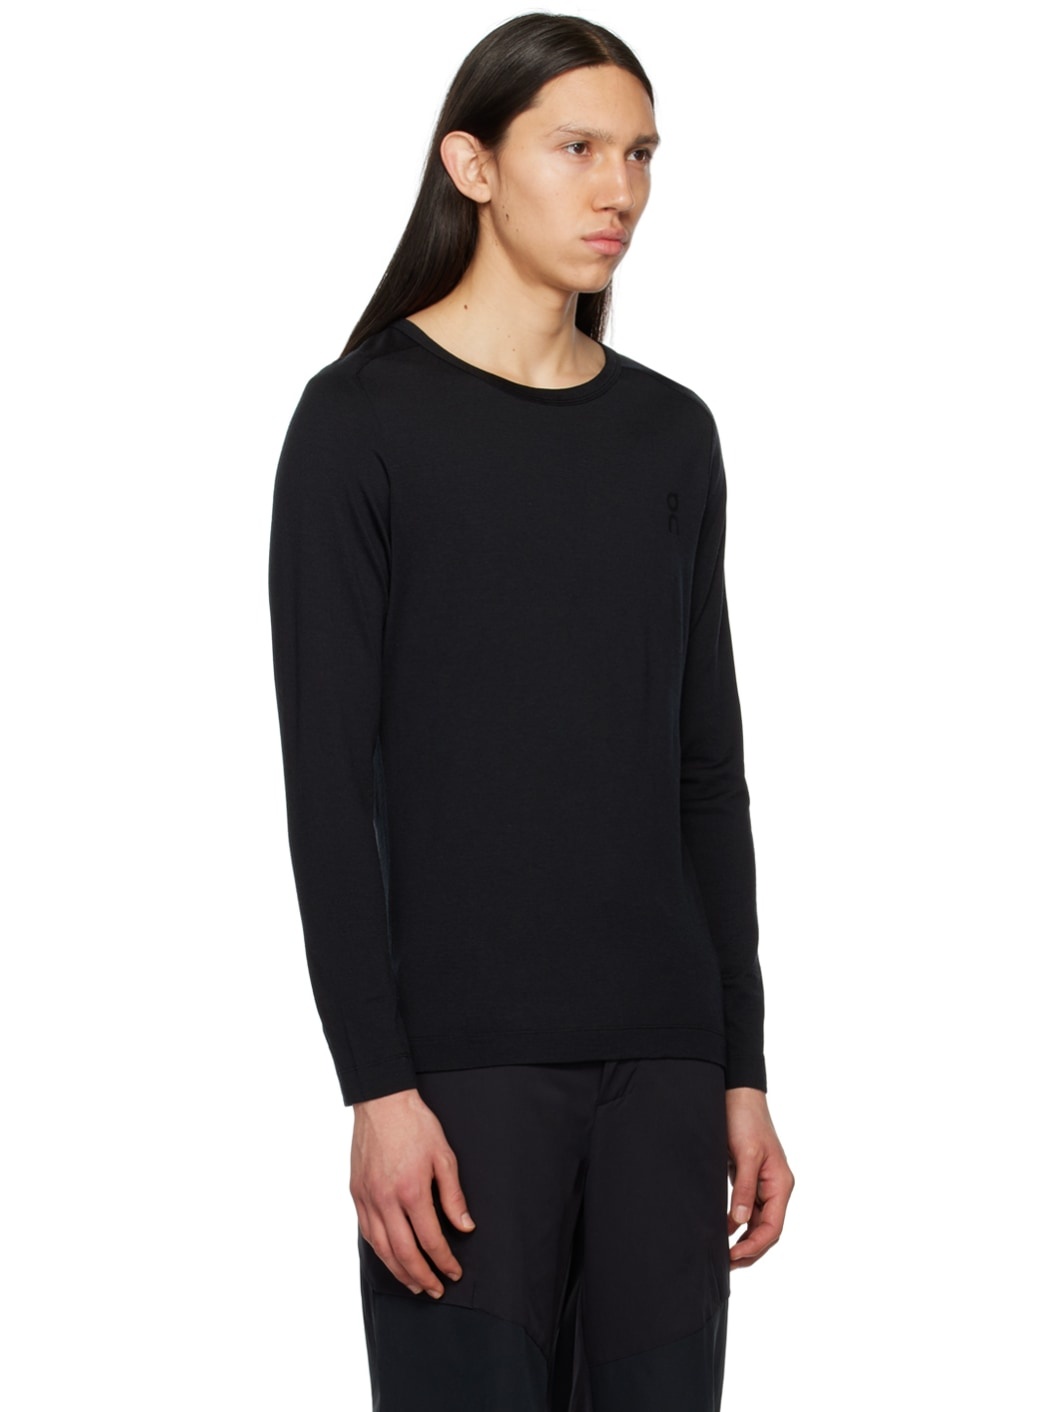 Black Lightweight Long Sleeve T-Shirt - 2